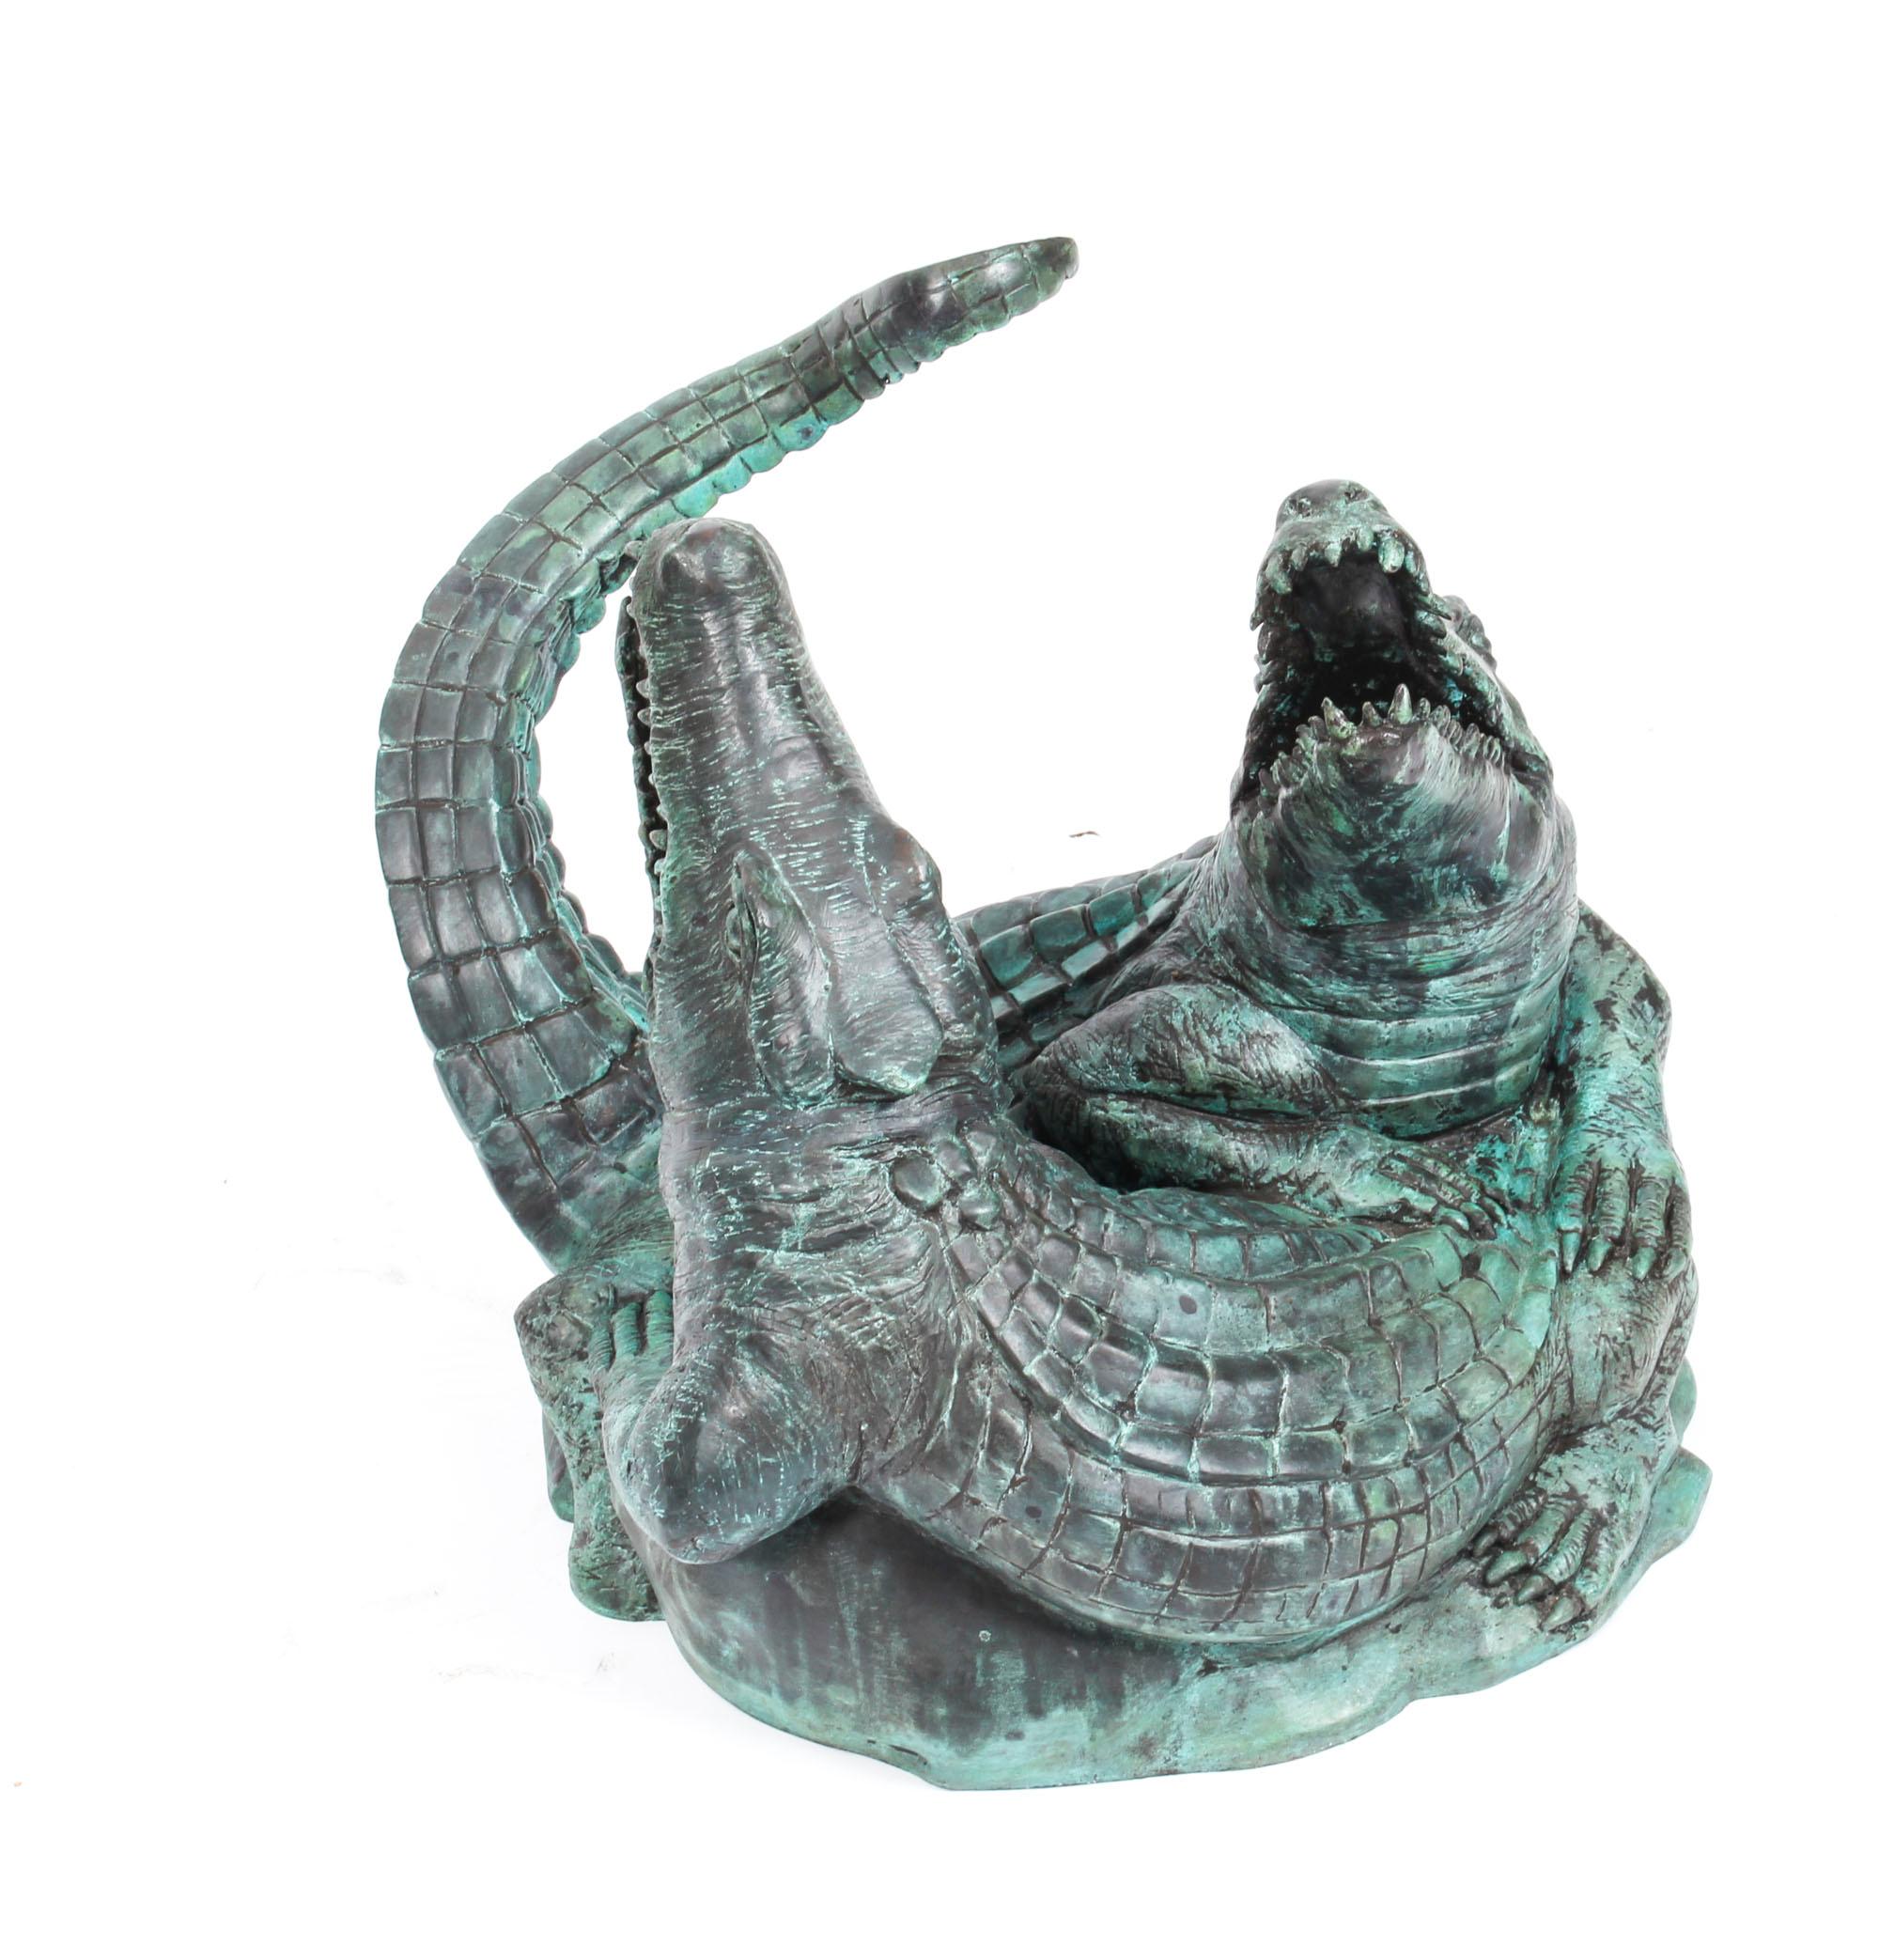 Il s'agit d'une impressionnante statue en bronze représentant deux crocodiles, datant du dernier quart du XXe siècle.

Cette statue en bronze réaliste représente deux crocodiles aux mâchoires ouvertes en quête de nourriture et au corps entrelacé. 
